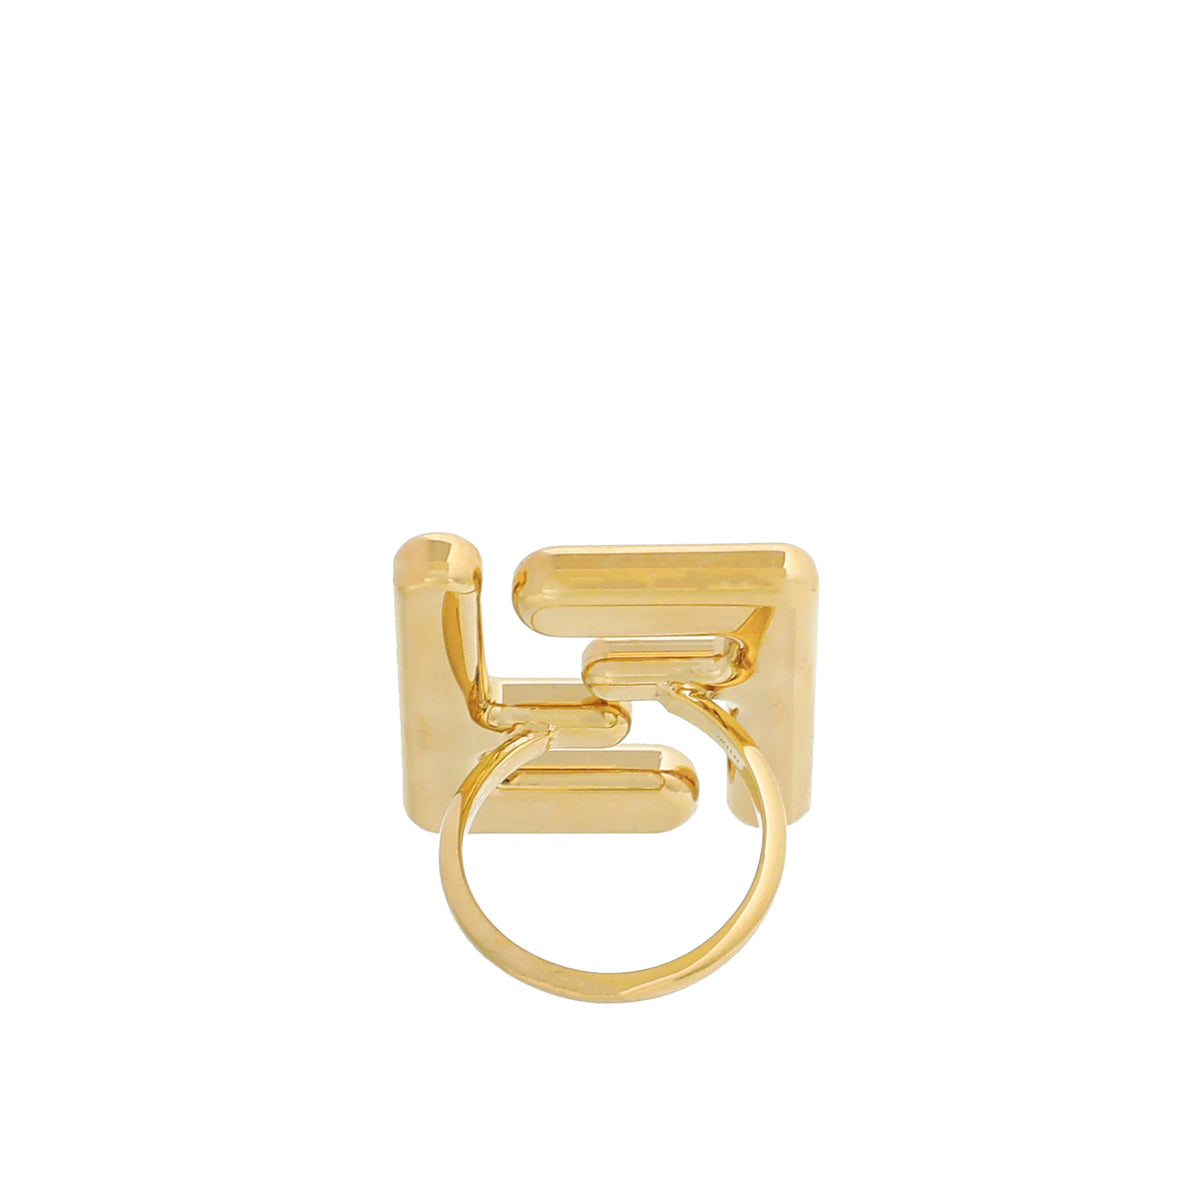 Fendi Gold Finish "Forever Fendi" Maxi Logo Ring Medium